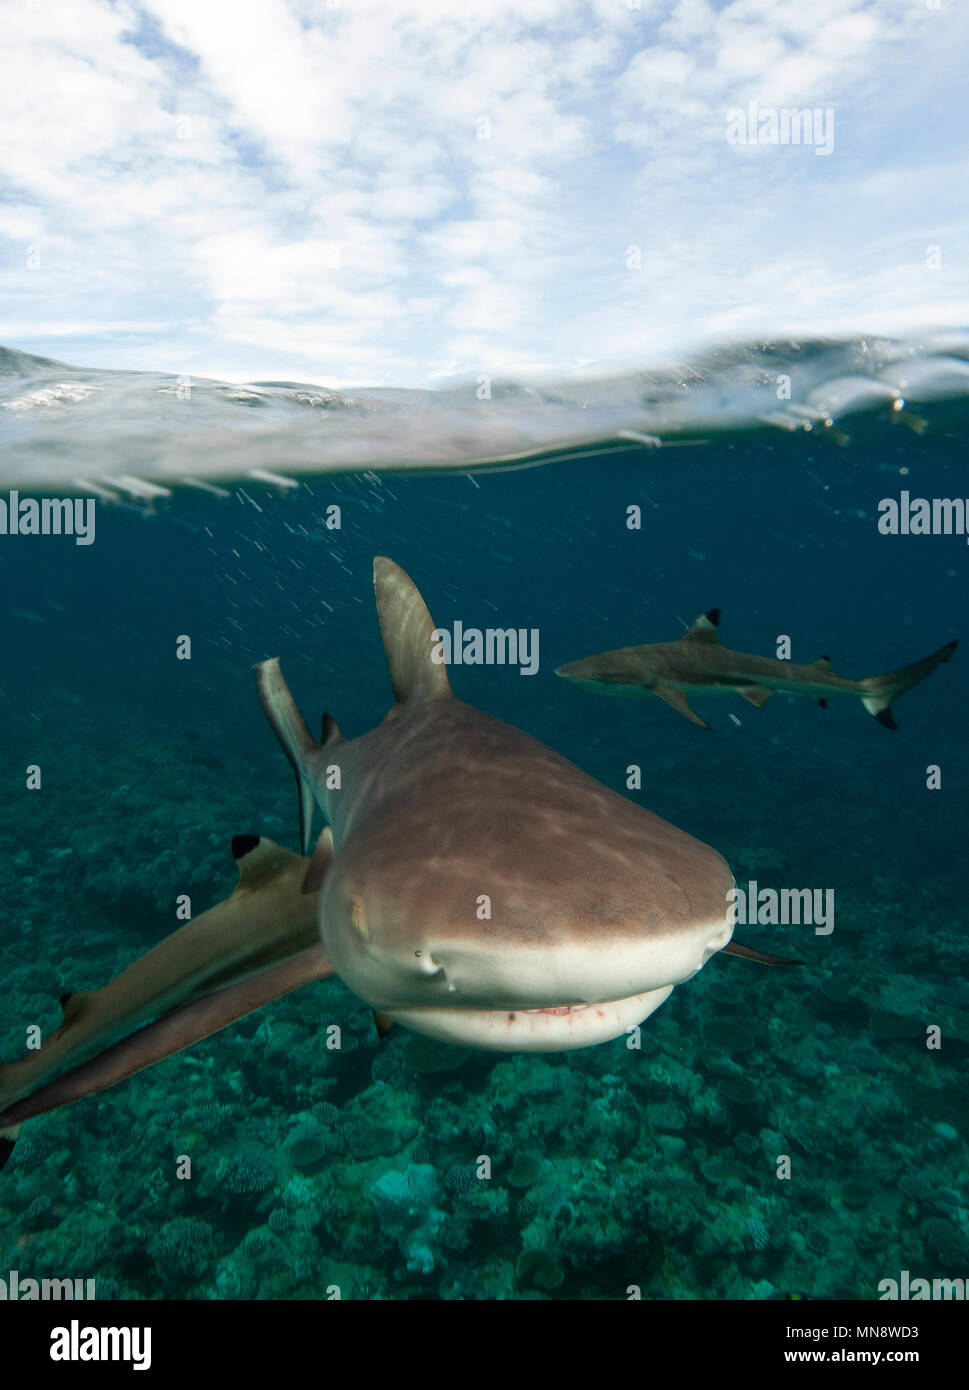 splitshot of sharks | halb-und-halb-Aufnahme von Haien Stock Photo